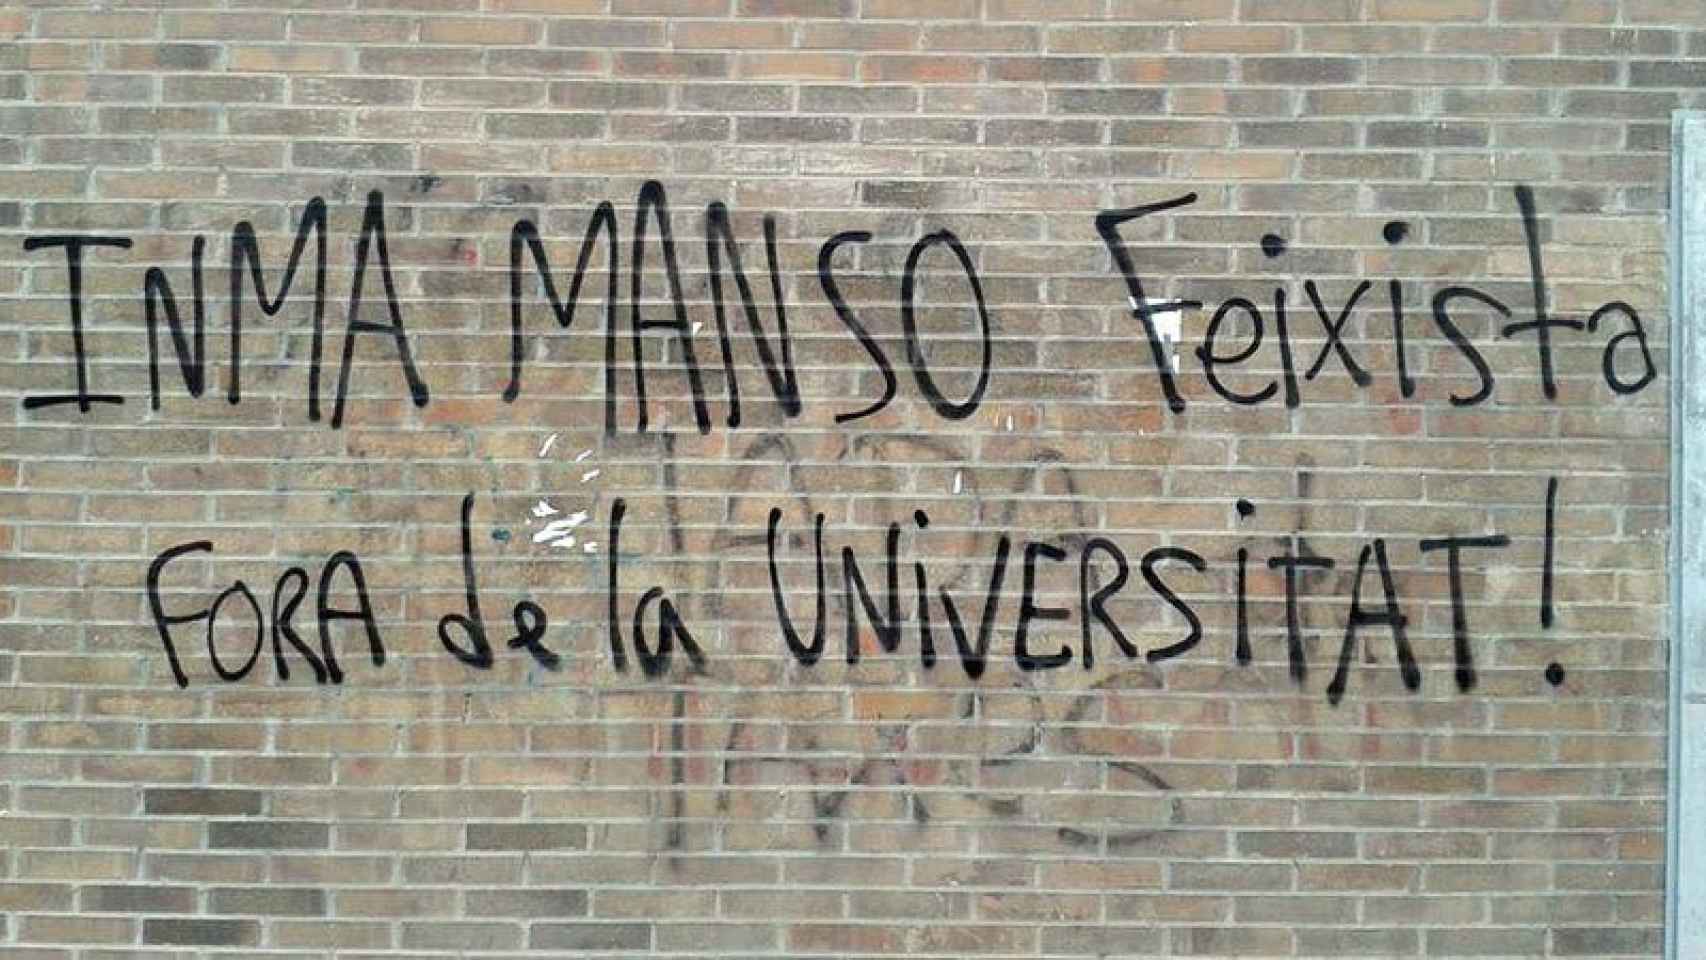 Pintada en una pared de la Universidad de Lleida contra Inma Manso, subdelegada del Gobierno y profesora de ese centro.